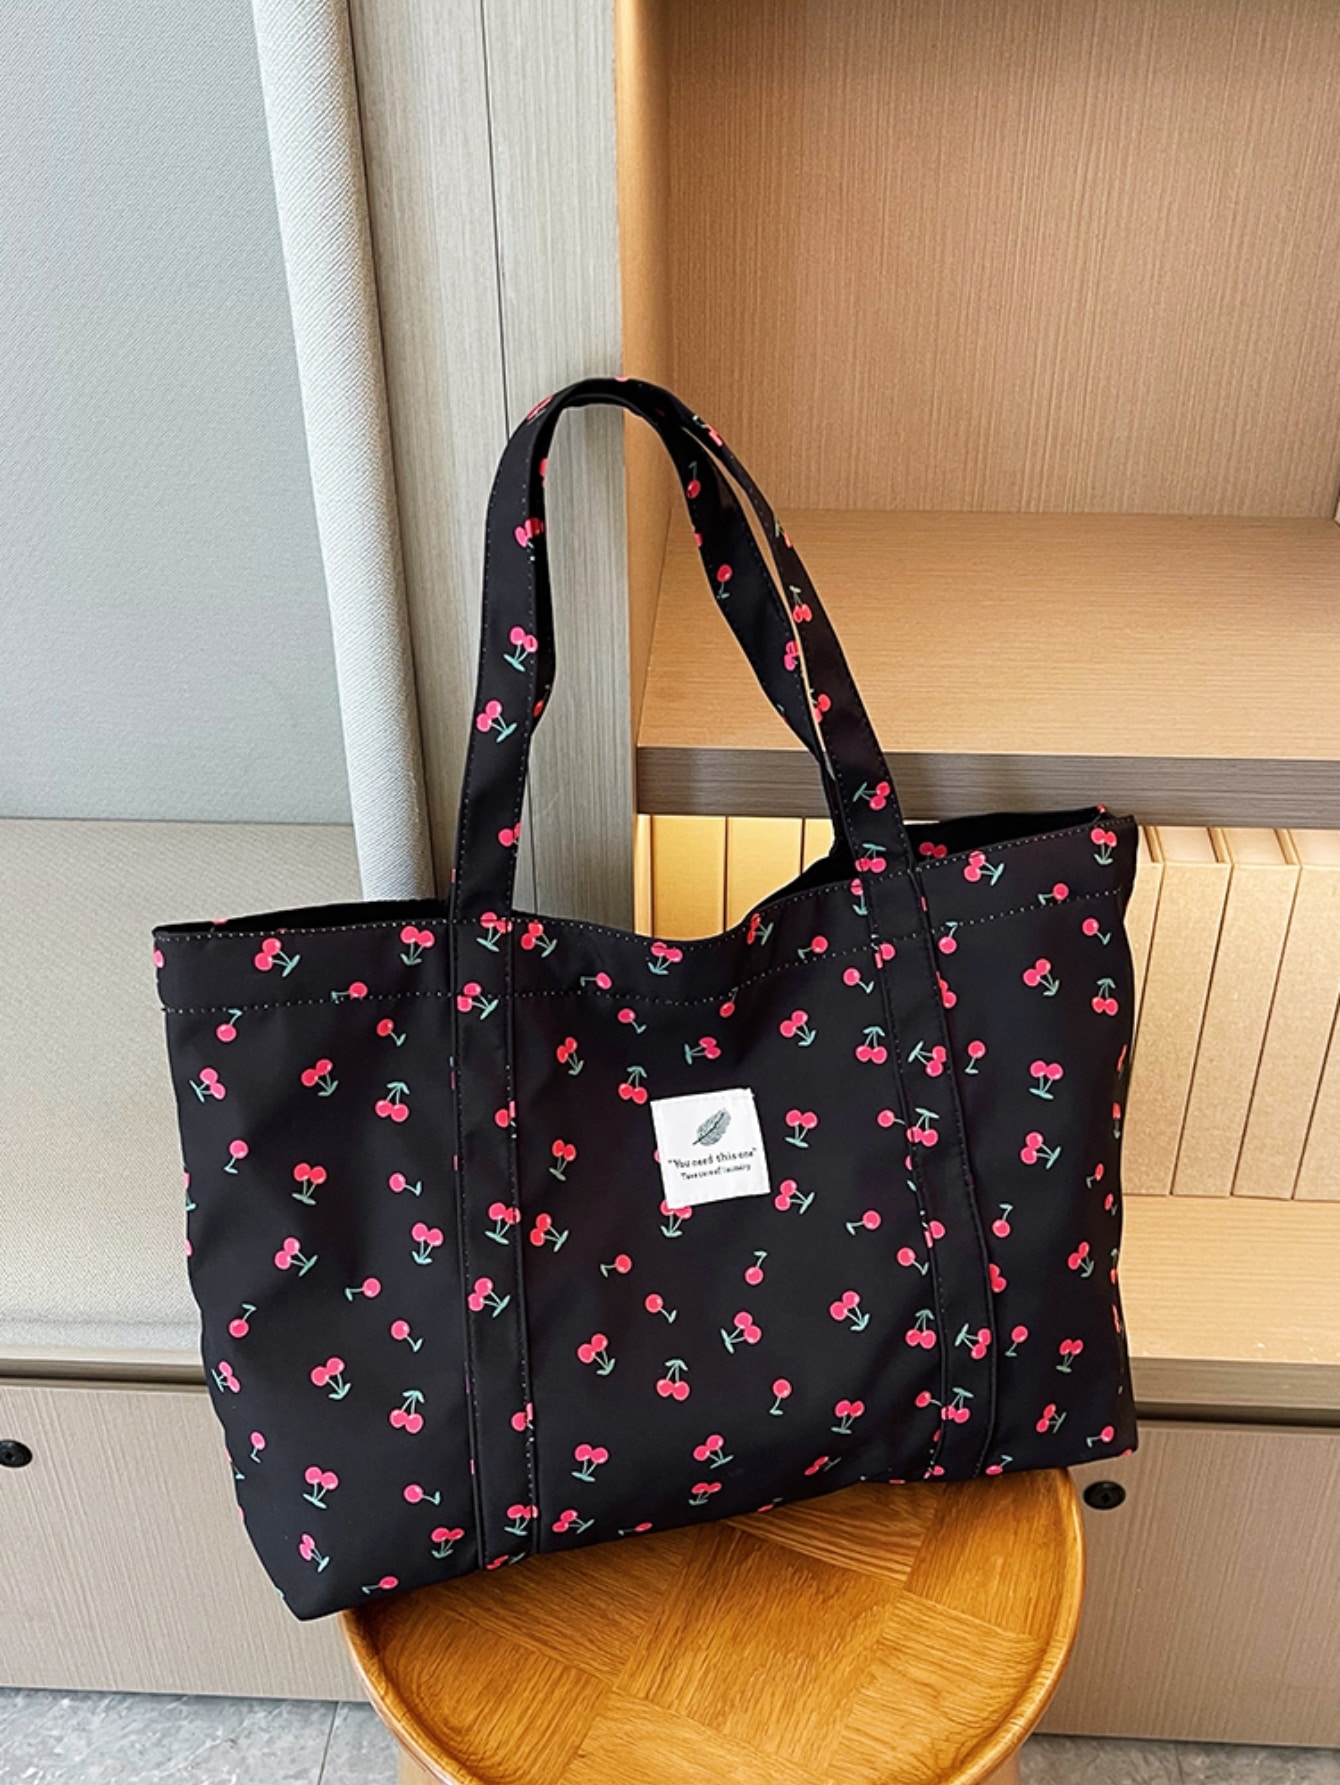 traeger cherry pellets 9kg bag Модная сумка для милой девушки с розовой клубникой и вишней через плечо, черный